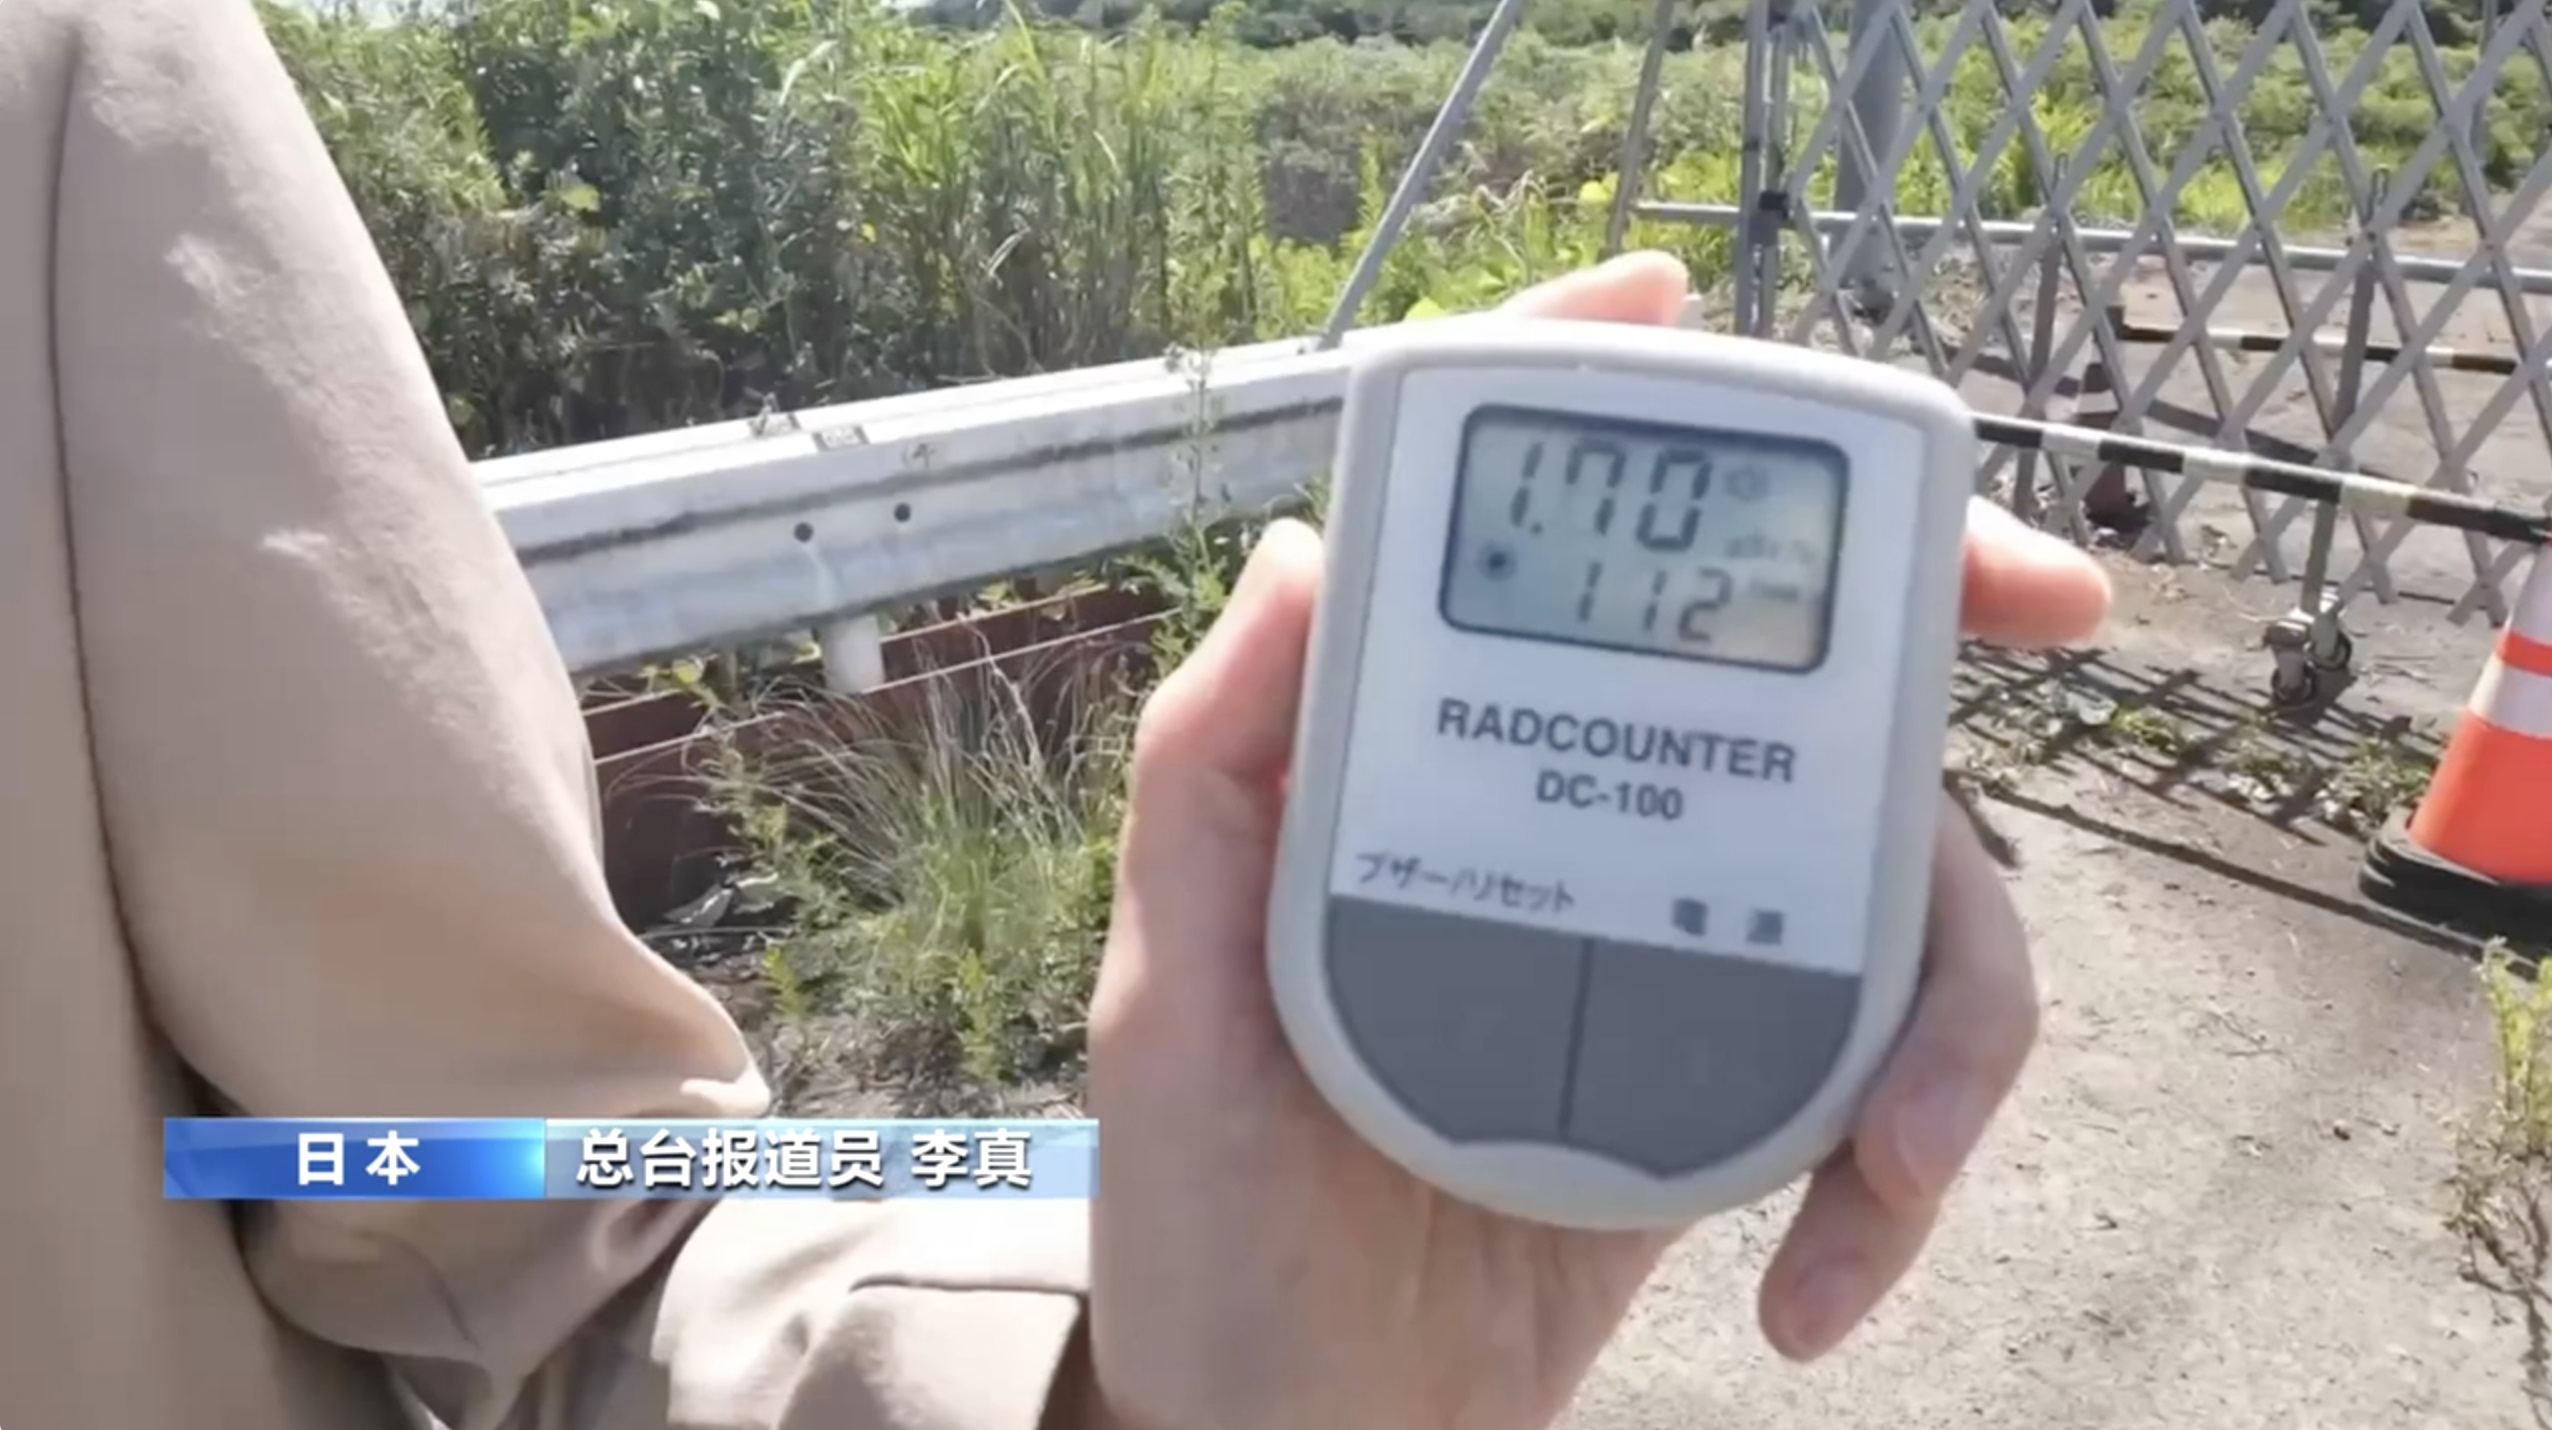 Jepang buang air terkontaminasi nuklir, tingkat radiasi lingkungan meningkat